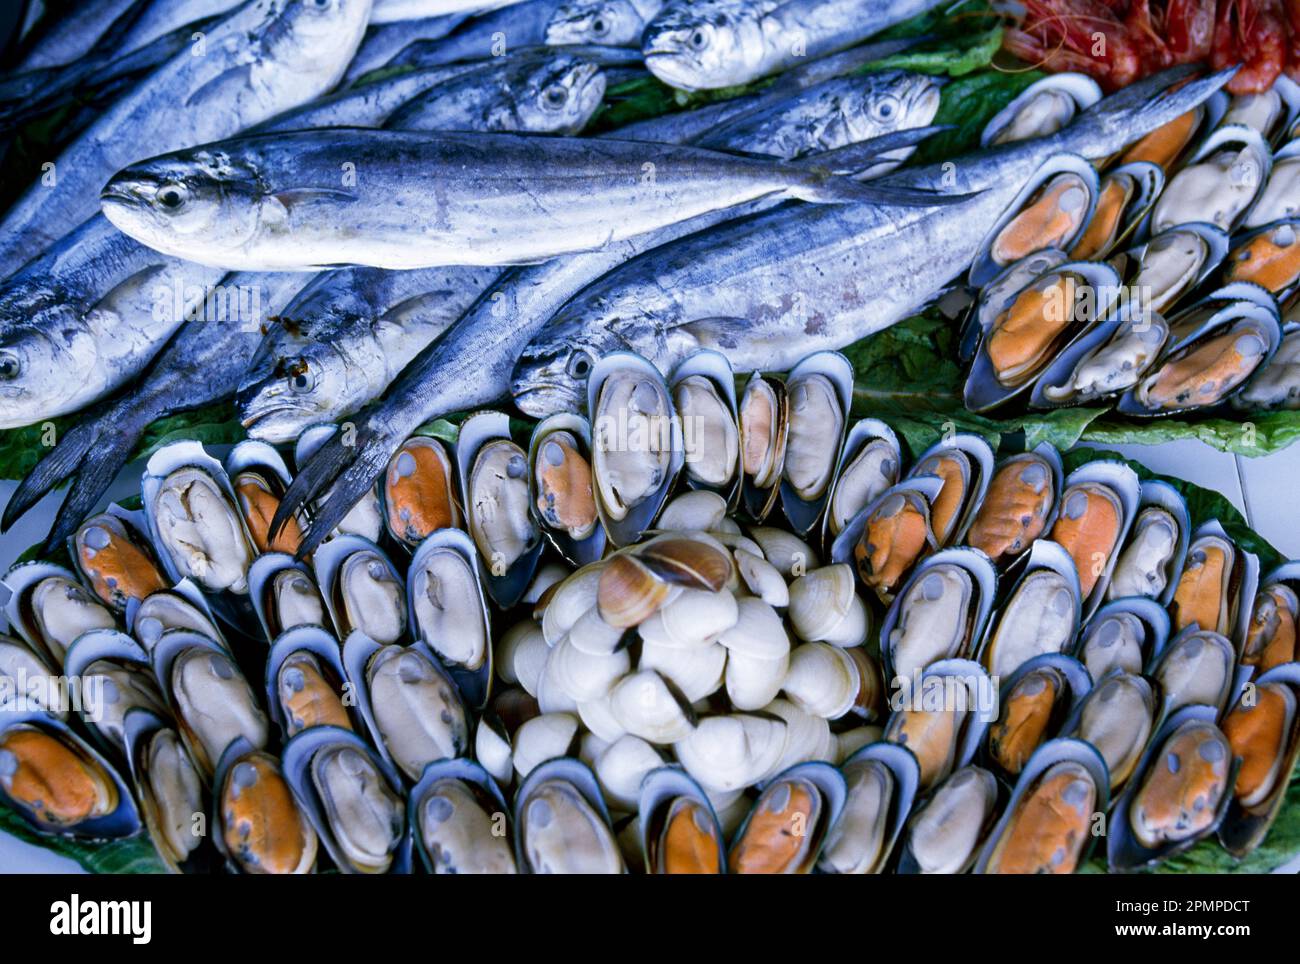 Almejas y pescado en un mercado de pescado; Malta Foto de stock